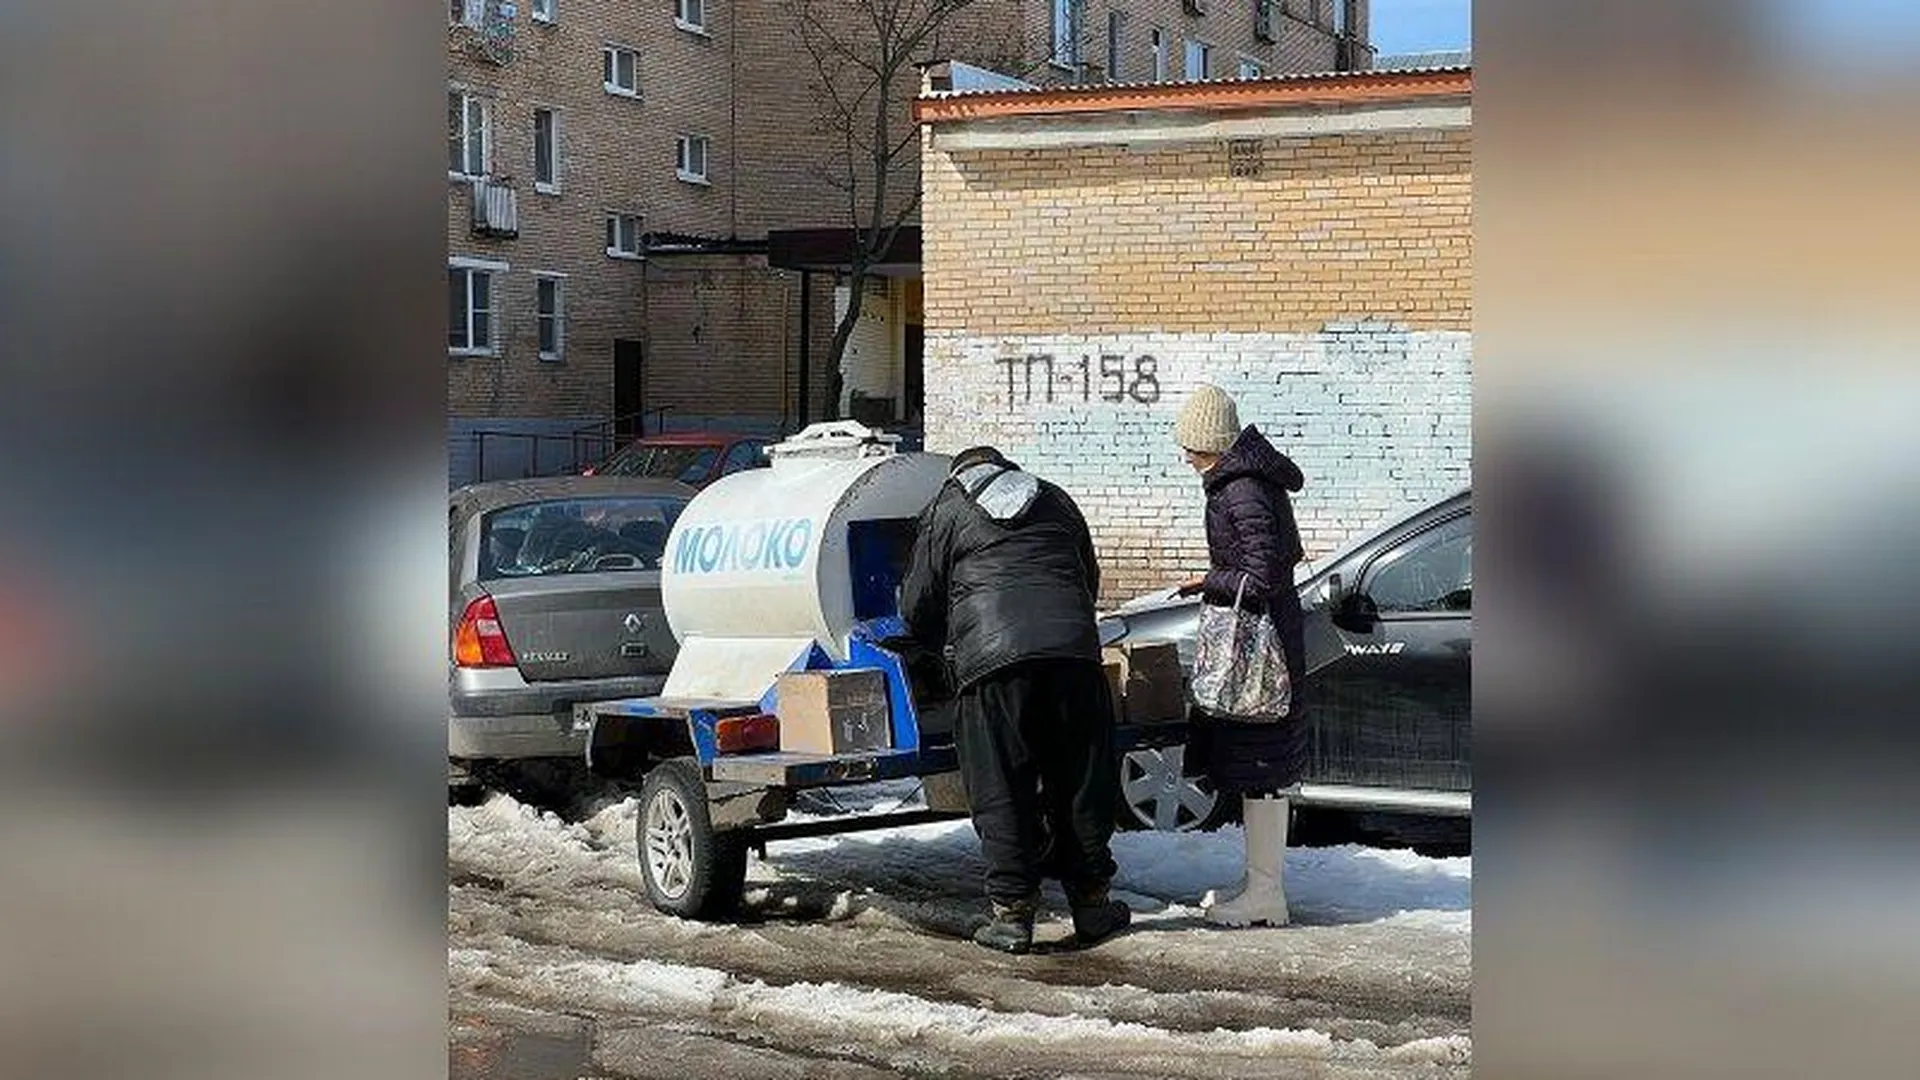 Бочка с молоком «как в старые добрые времена» появилась в Орехово-Зуево